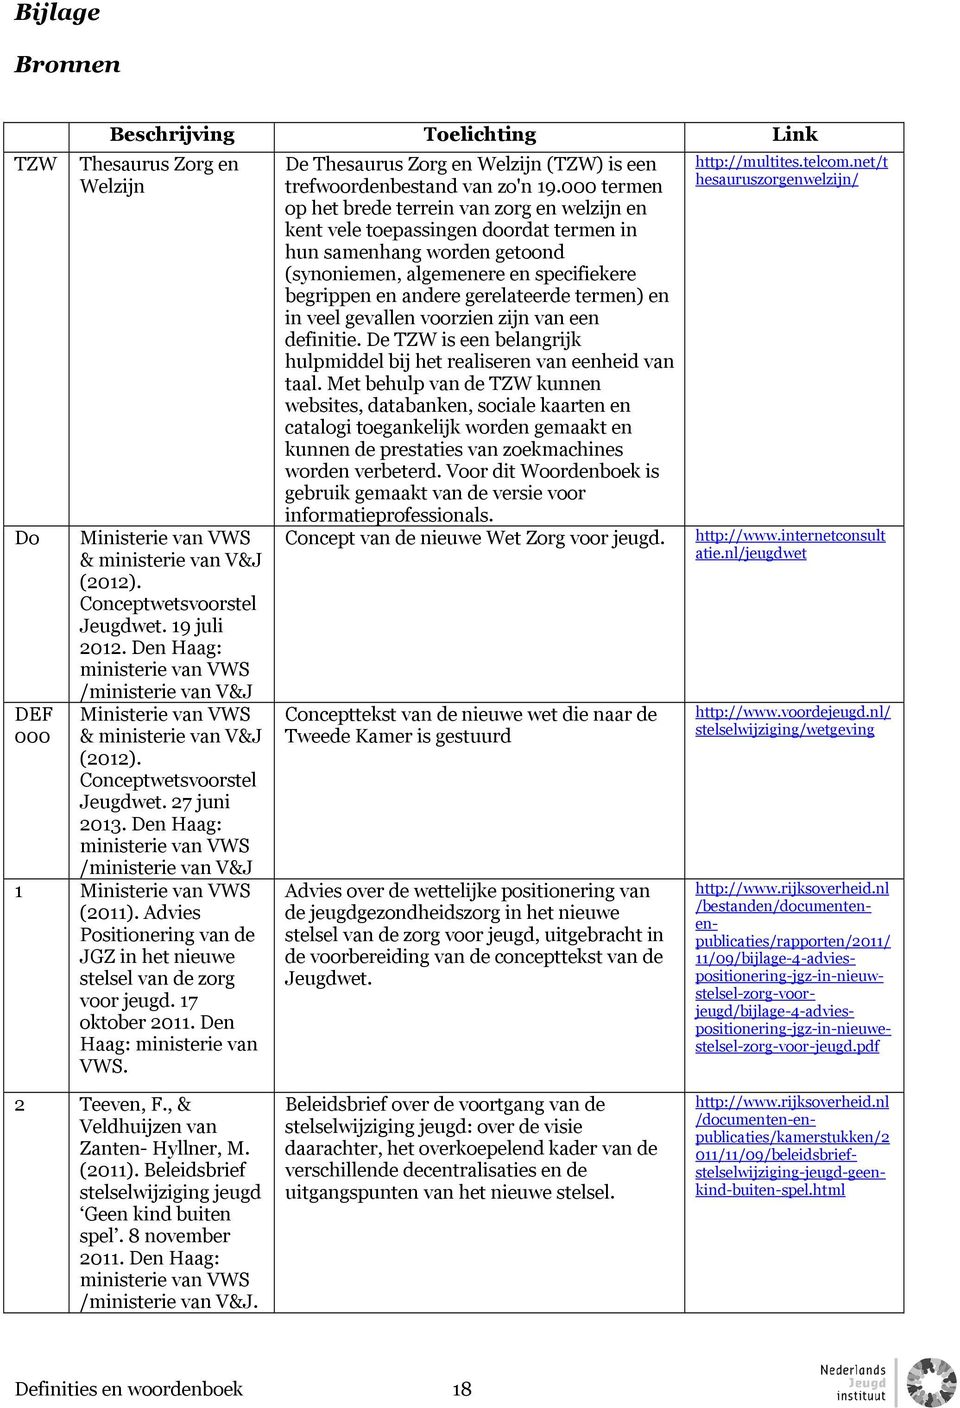 Den Haag: ministerie van VWS /ministerie van V&J 1 Ministerie van VWS (2011). Advies Positionering van de JGZ in het nieuwe stelsel van de zorg voor jeugd. 17 oktober 2011.